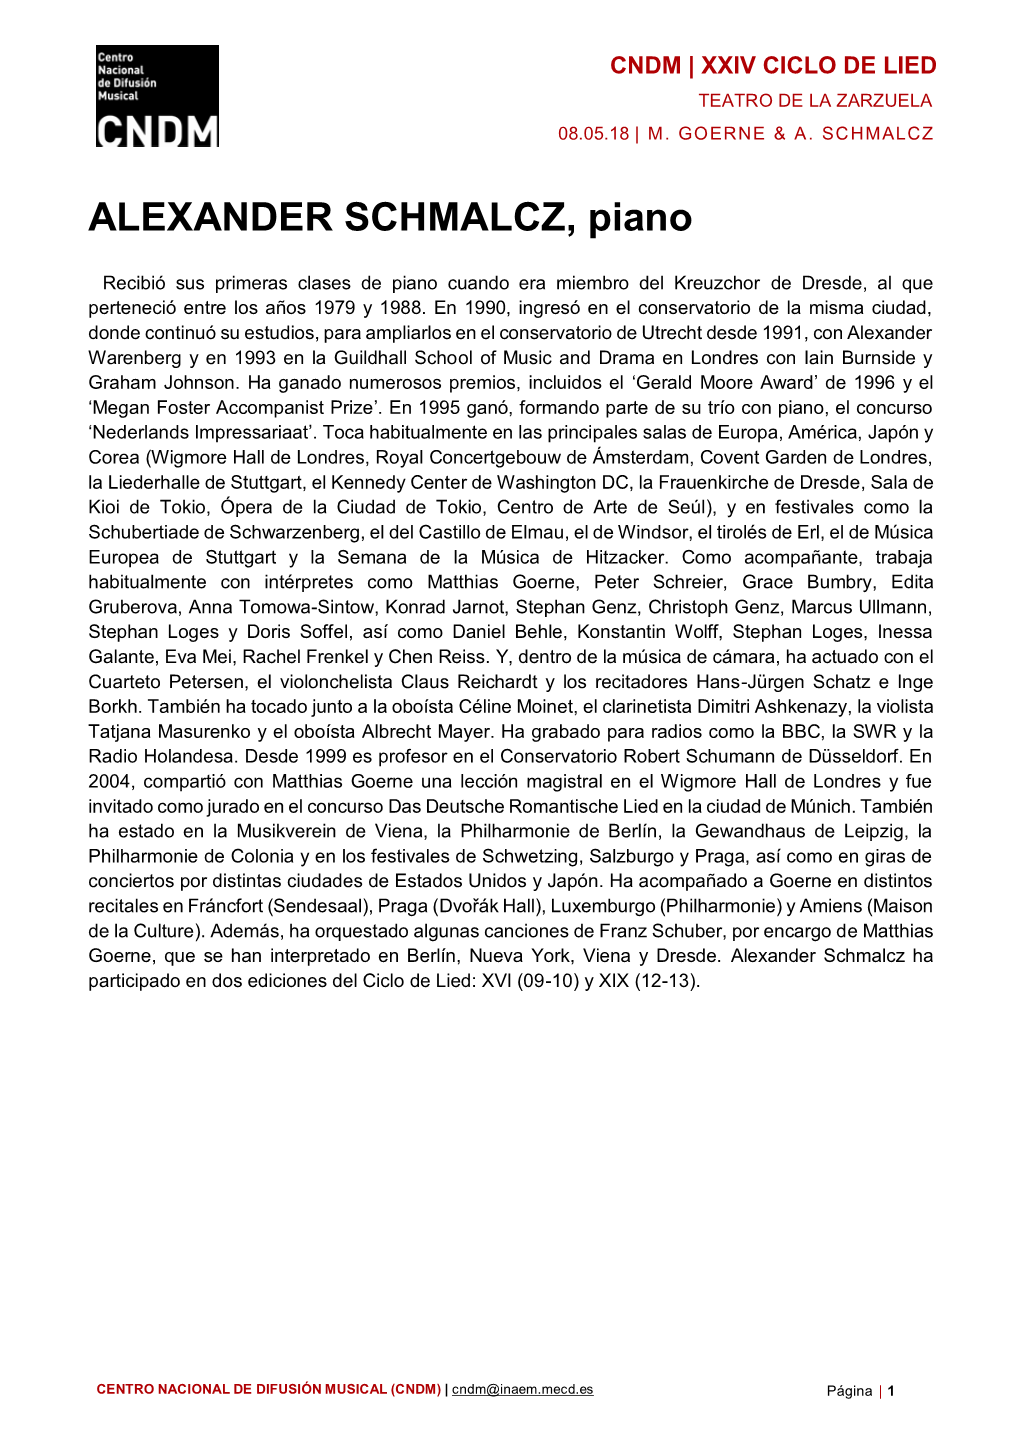 ALEXANDER SCHMALCZ, Piano